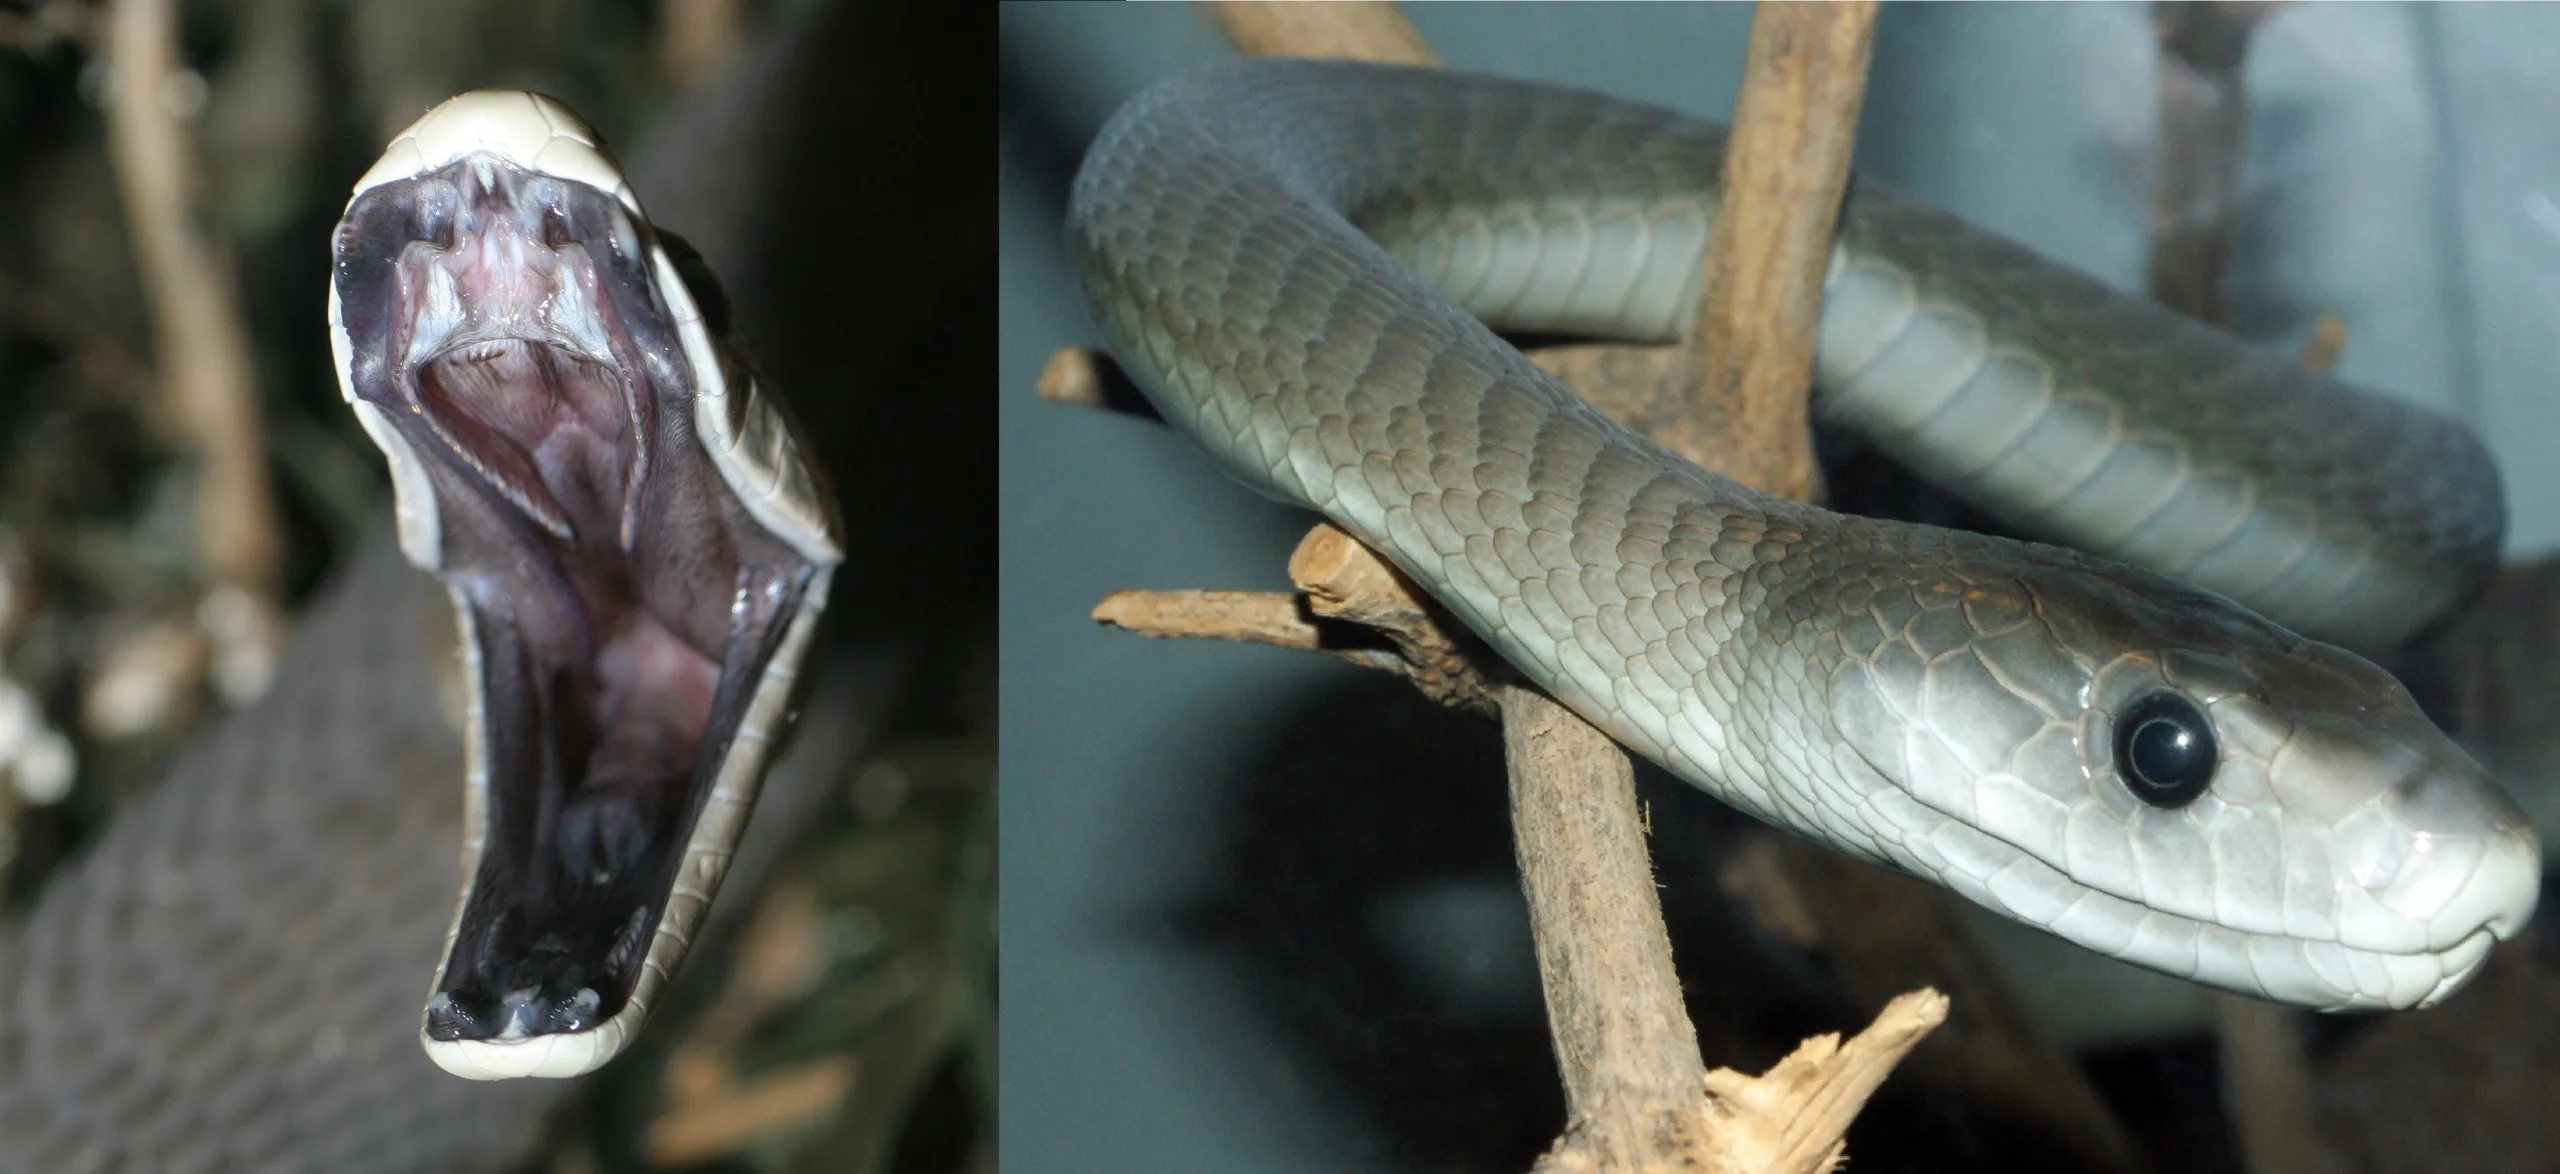 Serpentes - características, espécies, reprodução, alimentação